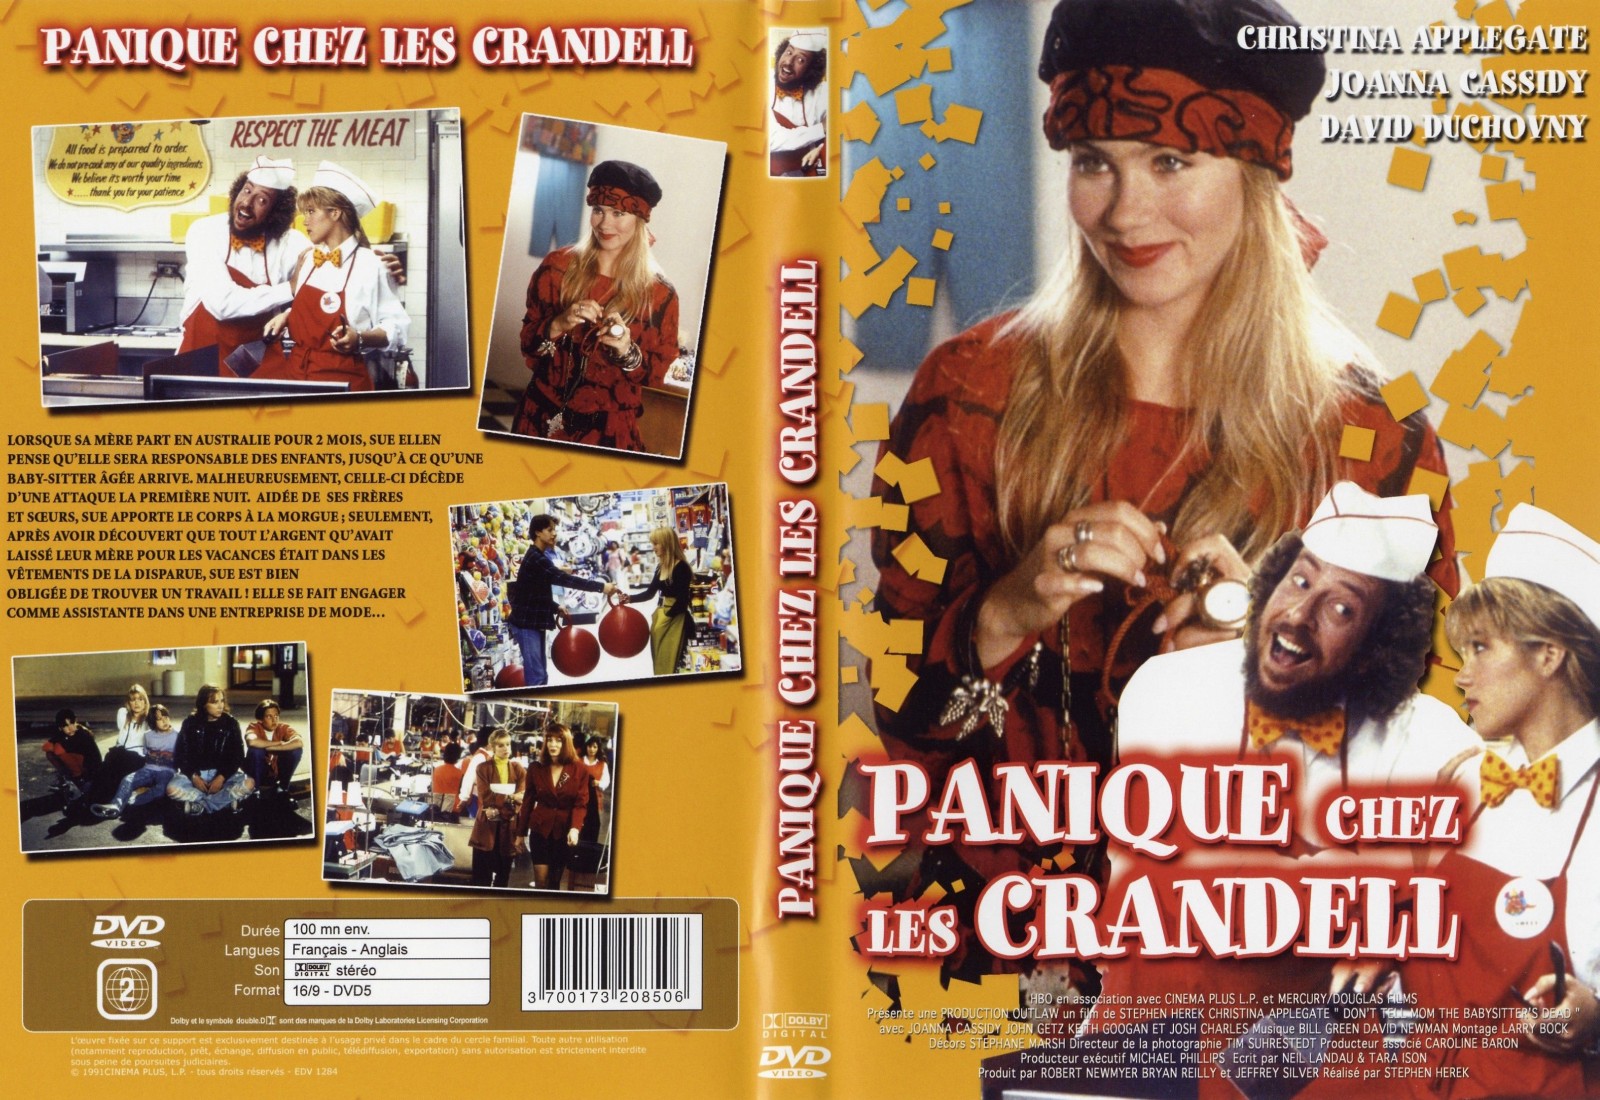 Jaquette DVD Panique chez les Crandell